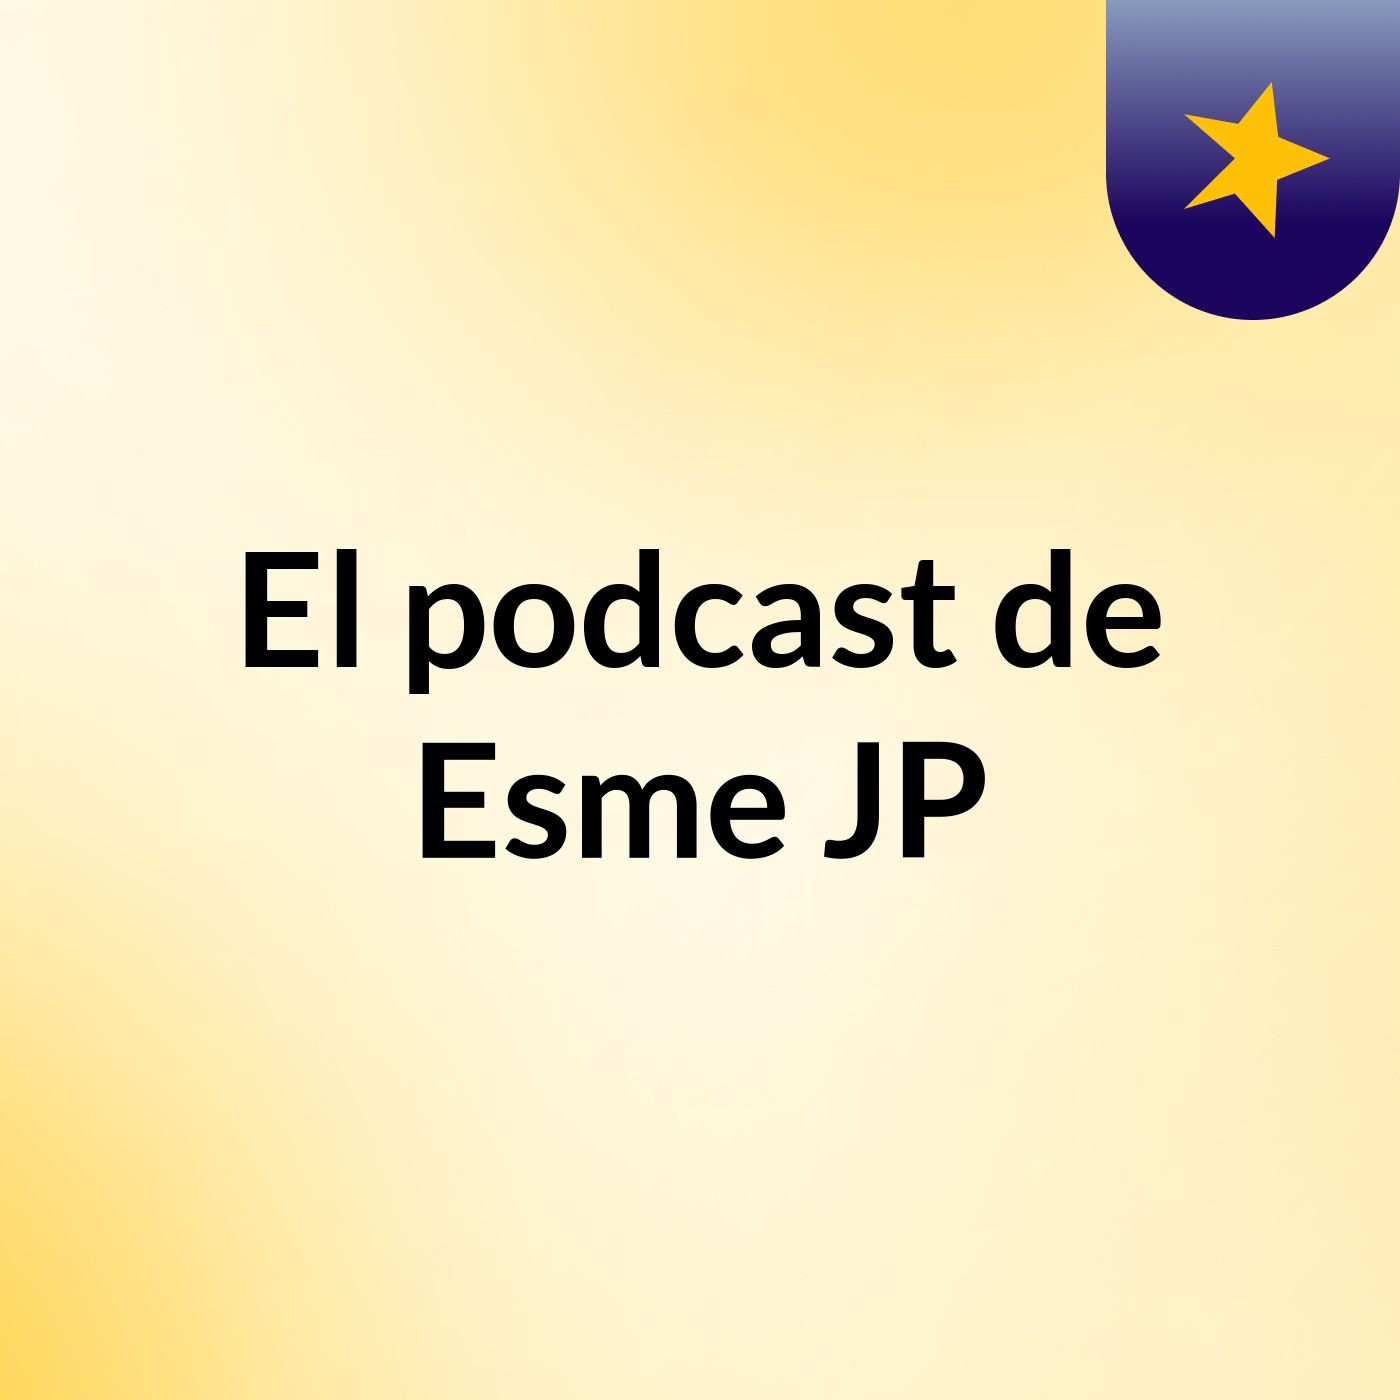 El podcast de Esme JP